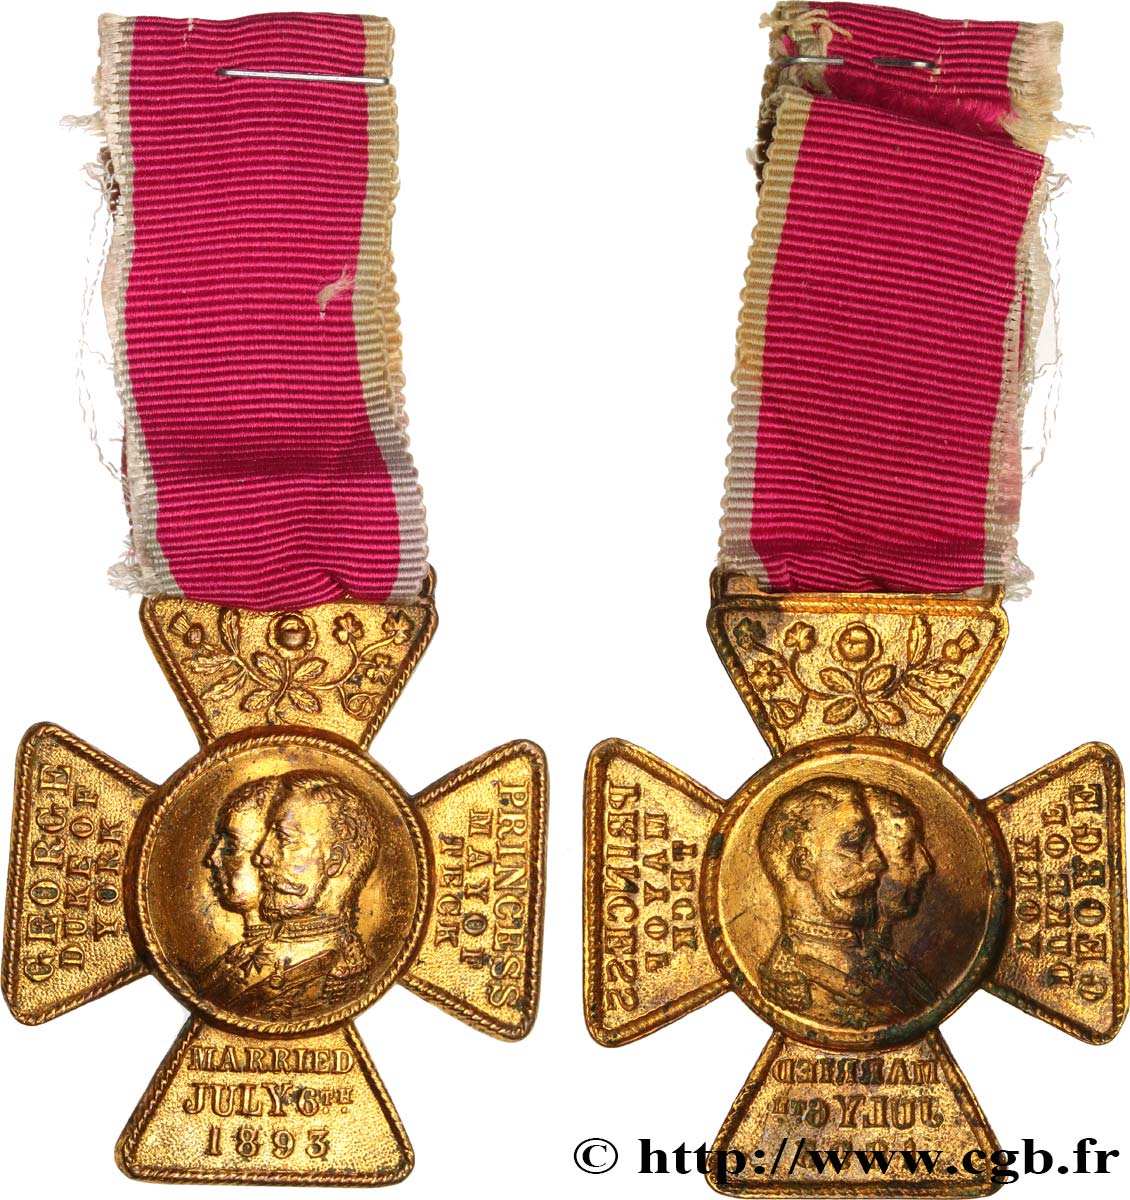 ANGLETERRE - GEORGES V Médaille, Mariage de la Princesse Victoria de teck avec le Prince George, duc d’York BB